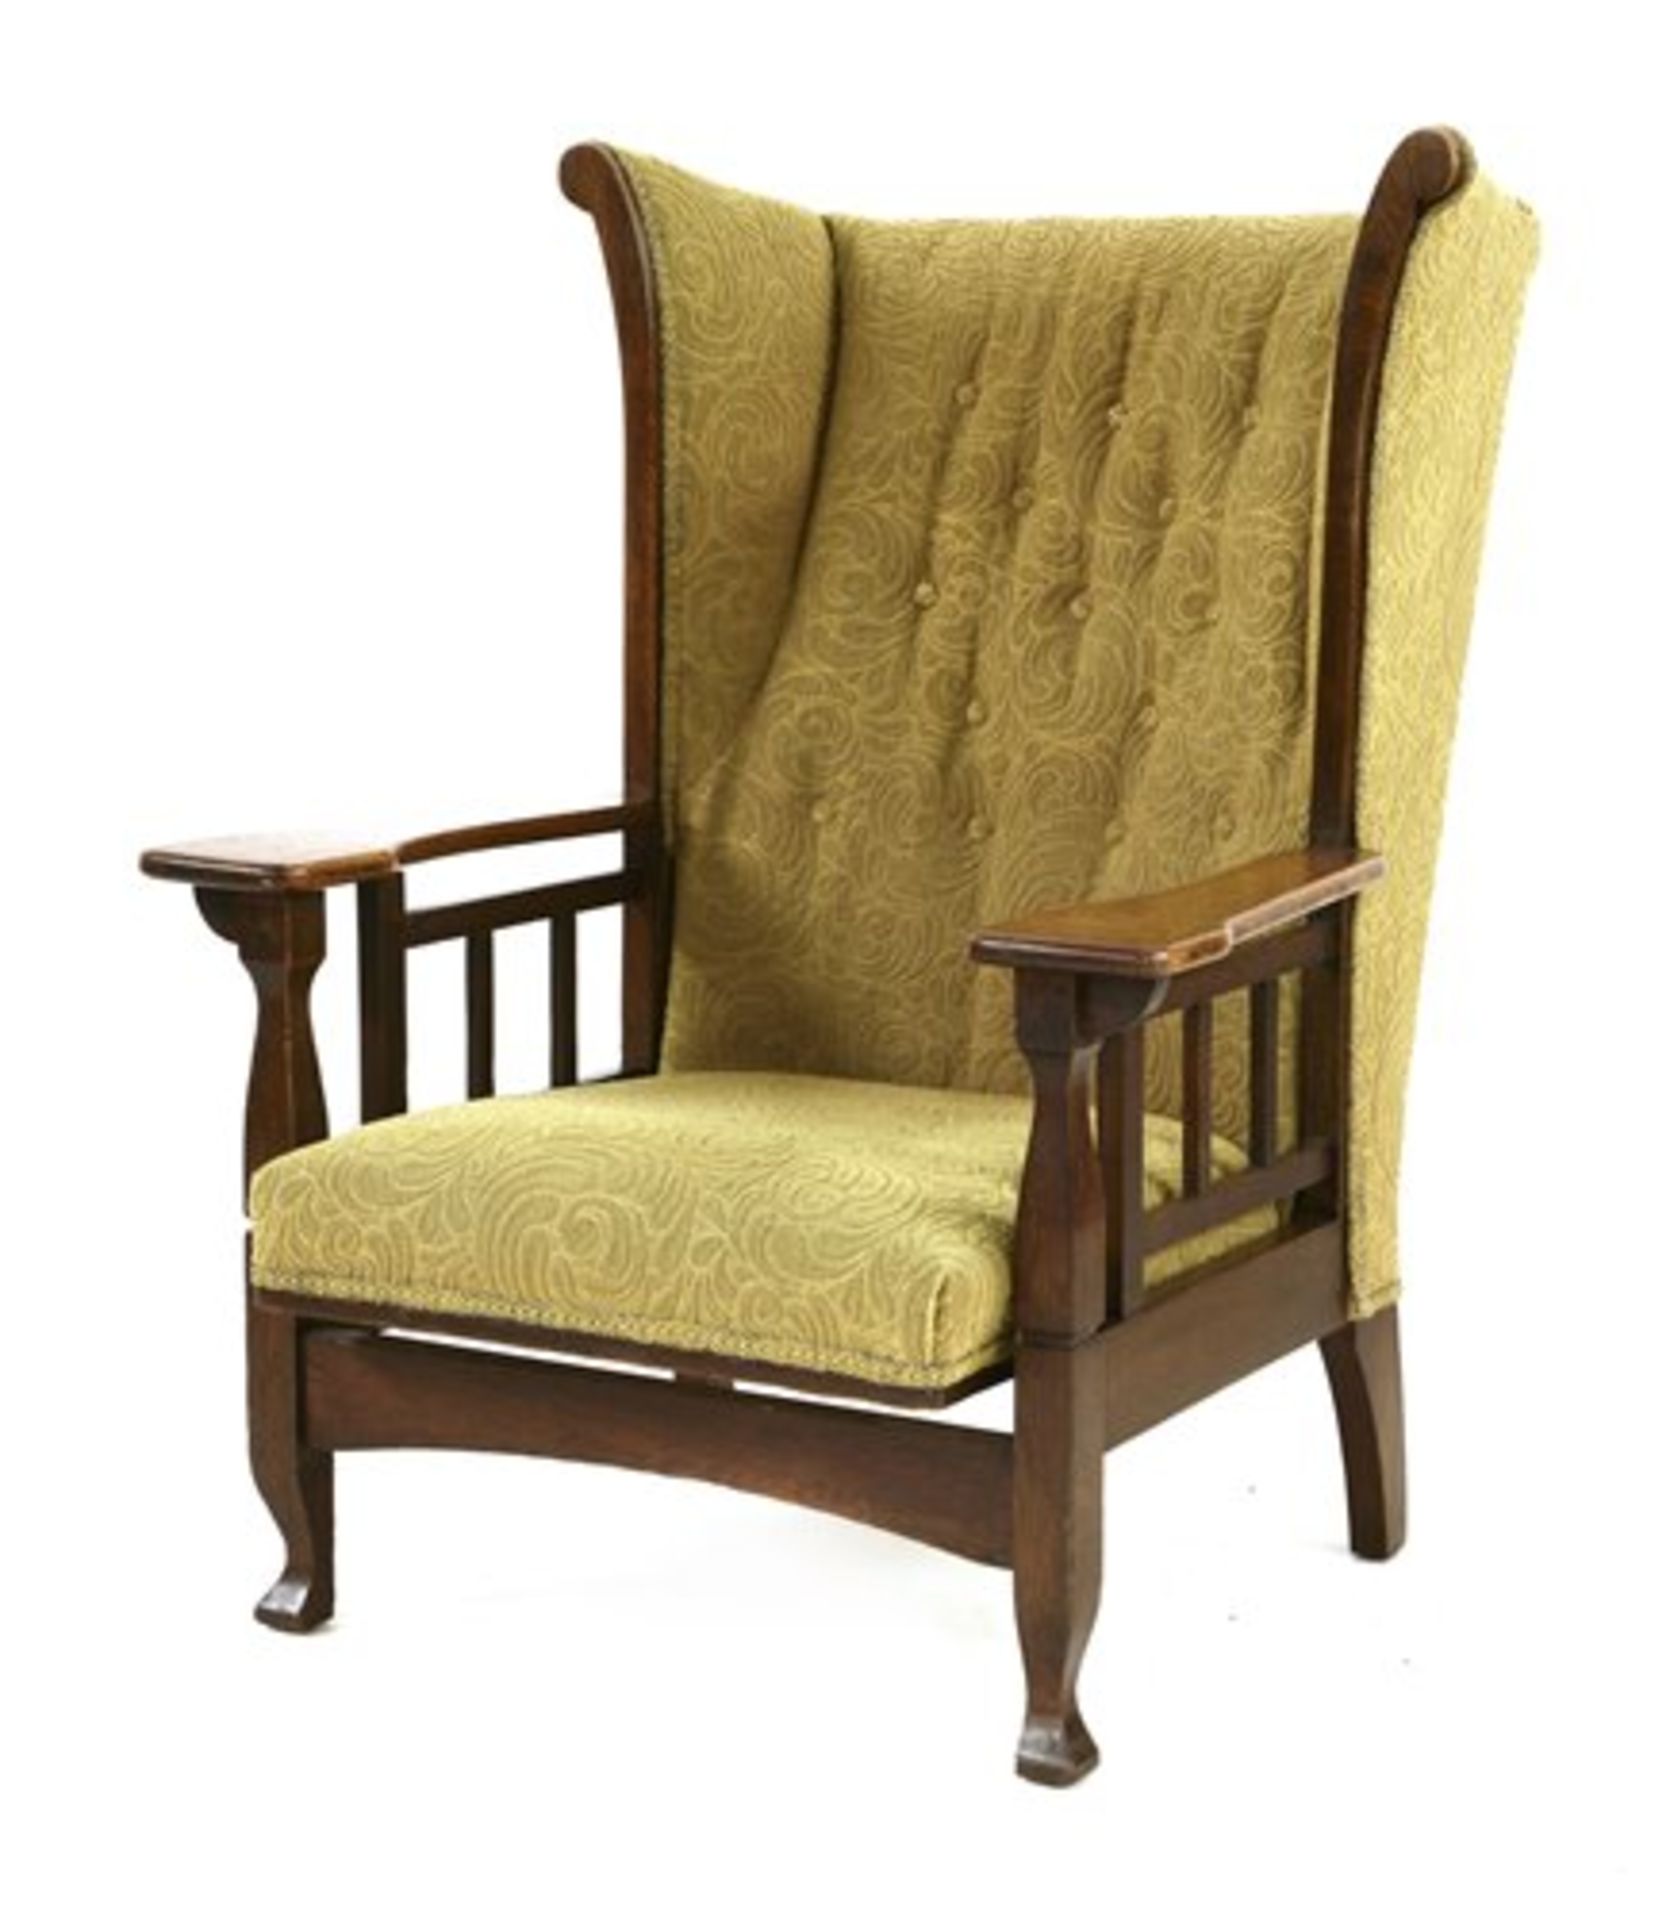 An Arts & Crafts oak armchair